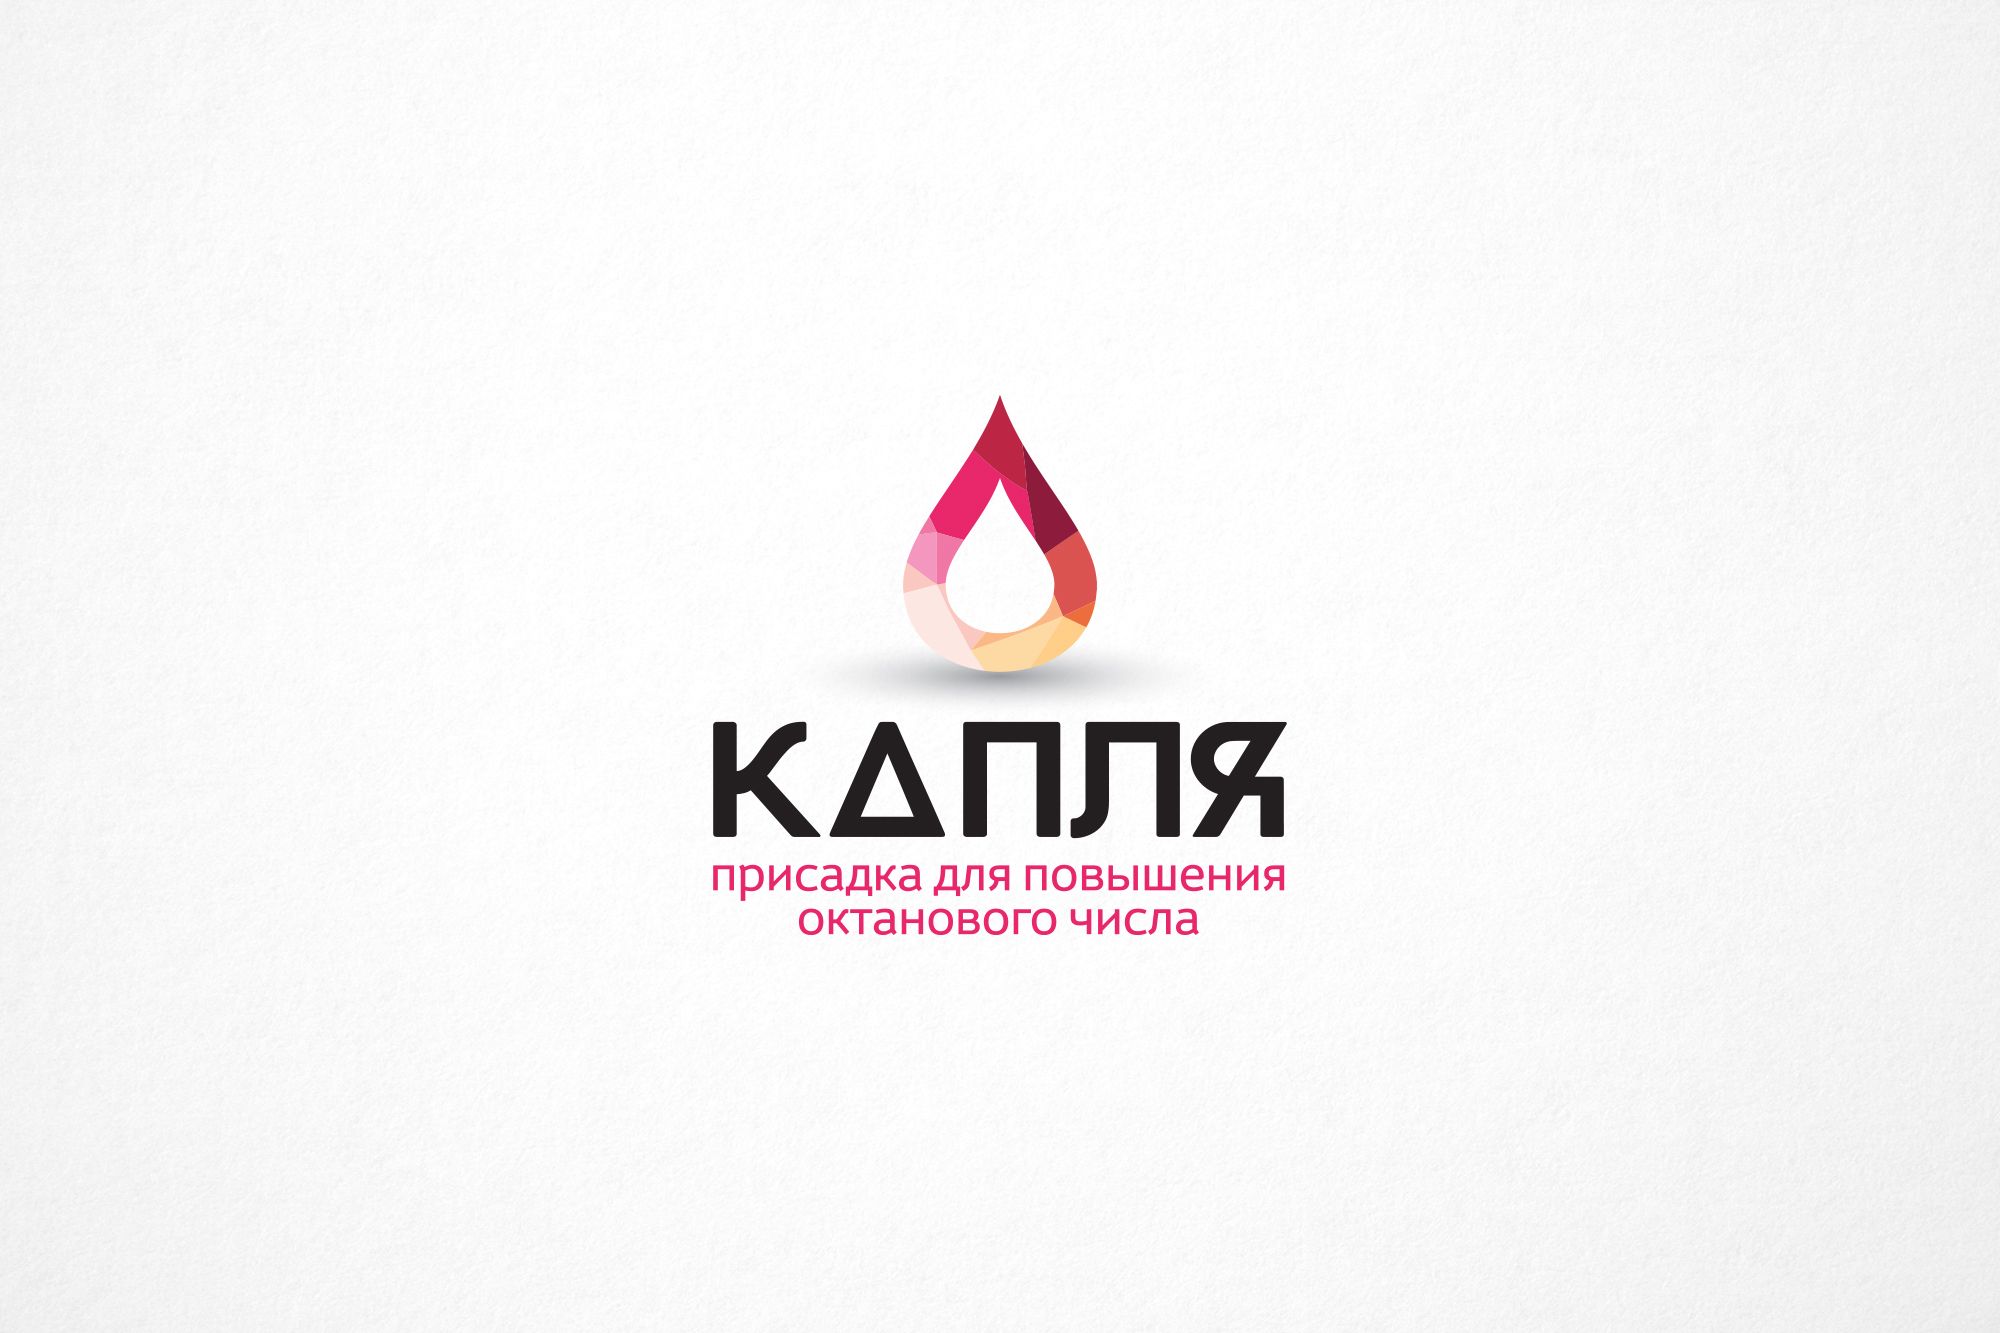 Лого для присадки повышения октанового числа Капля - дизайнер Da4erry